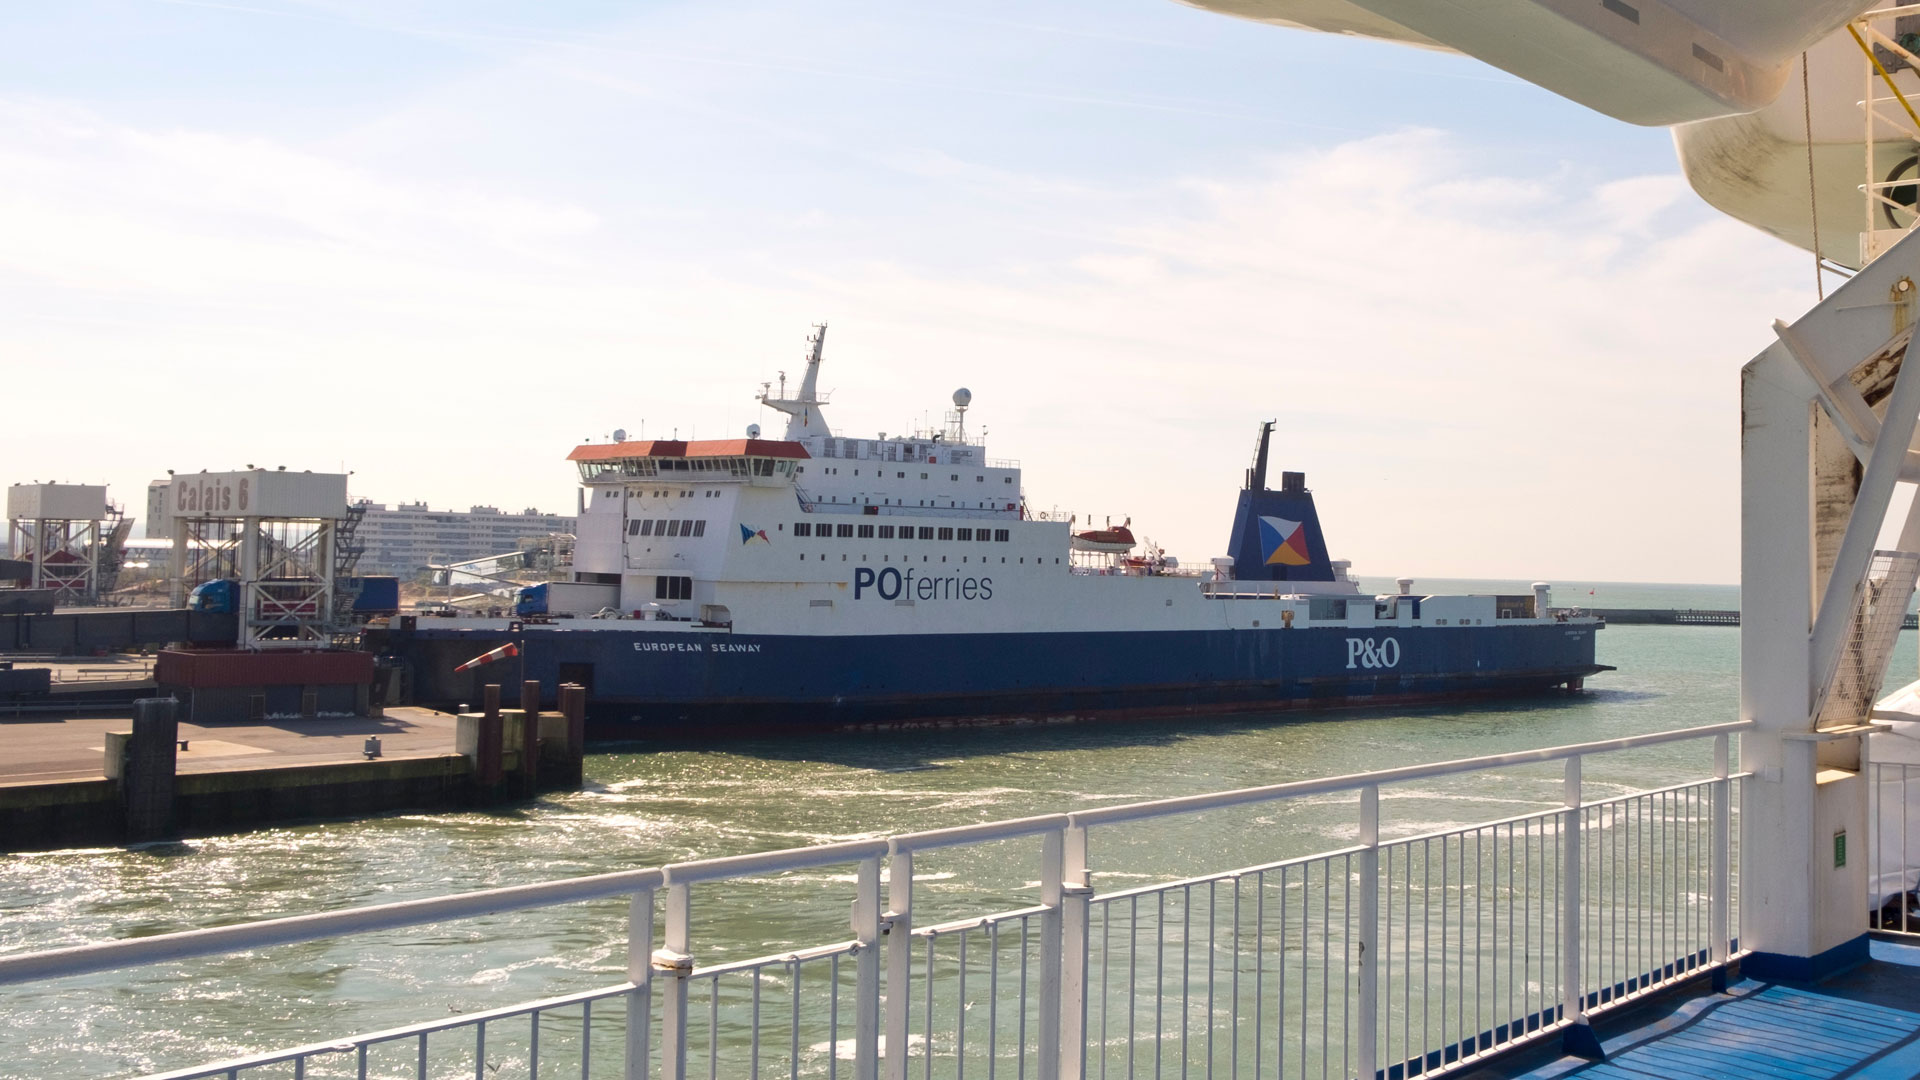 Calais ferry port